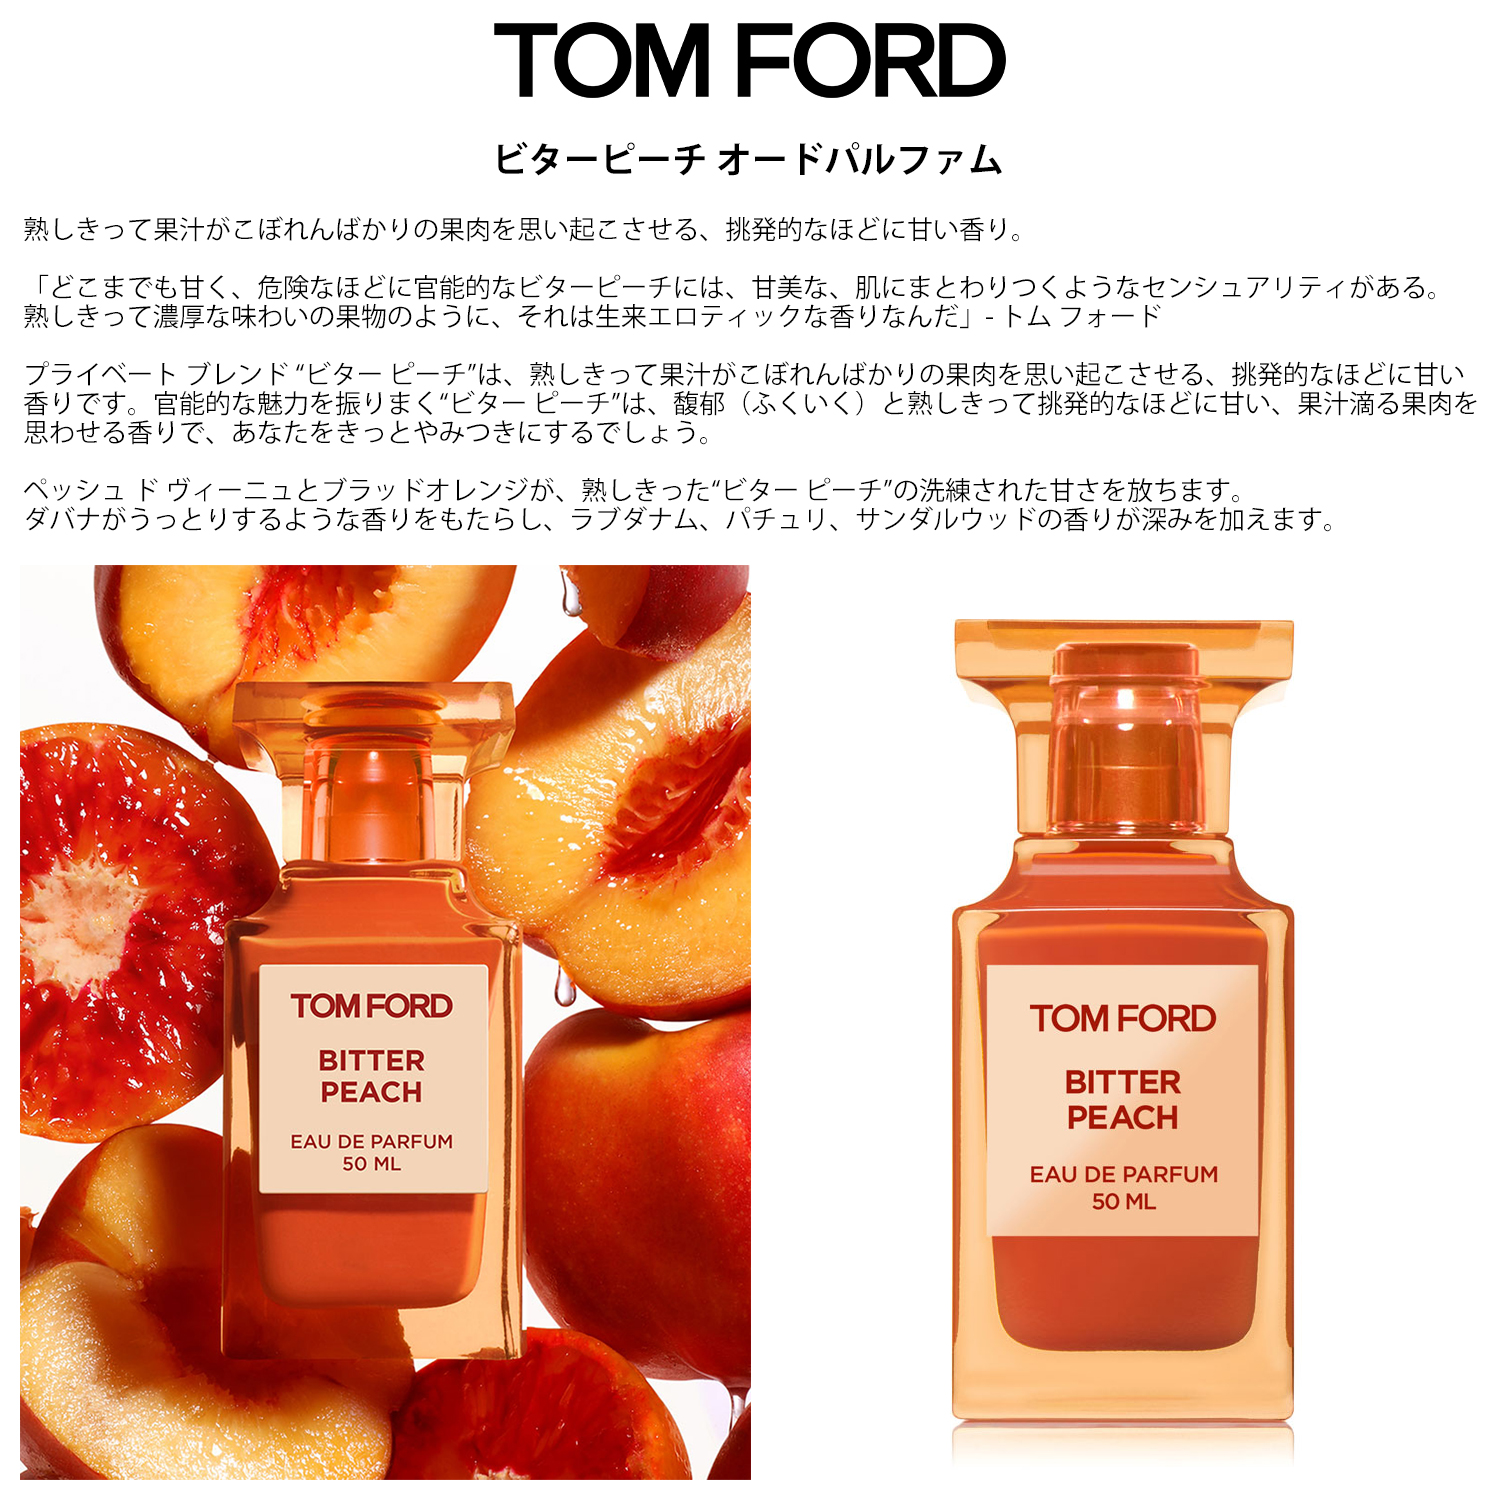 TOM FORD トムフォード 香水 お試し 1ml 人気 4本セット メンズ レディース ユニセックス